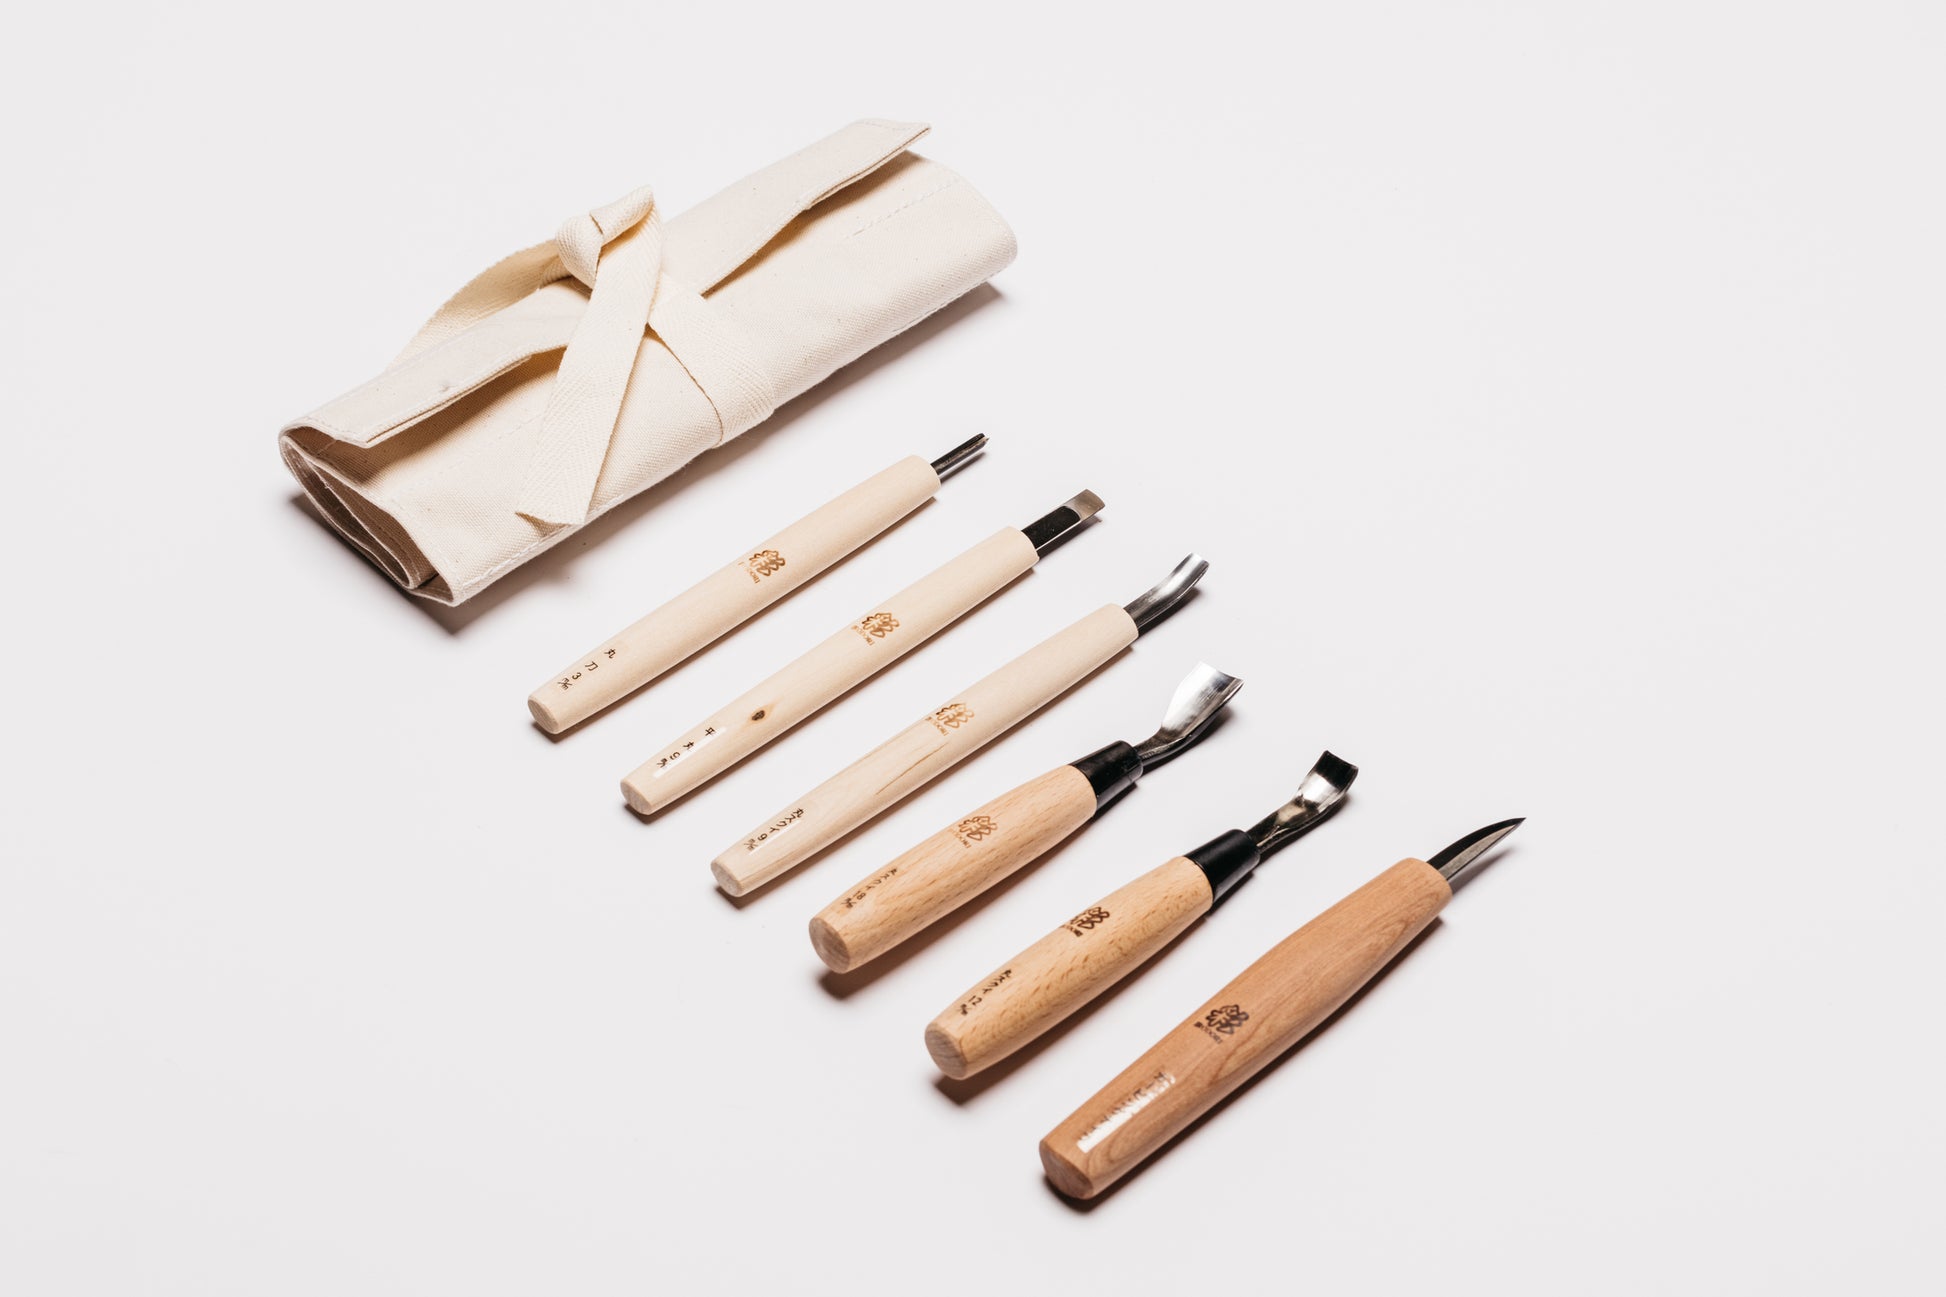 Japanese Beginner Spoon Carving Kit